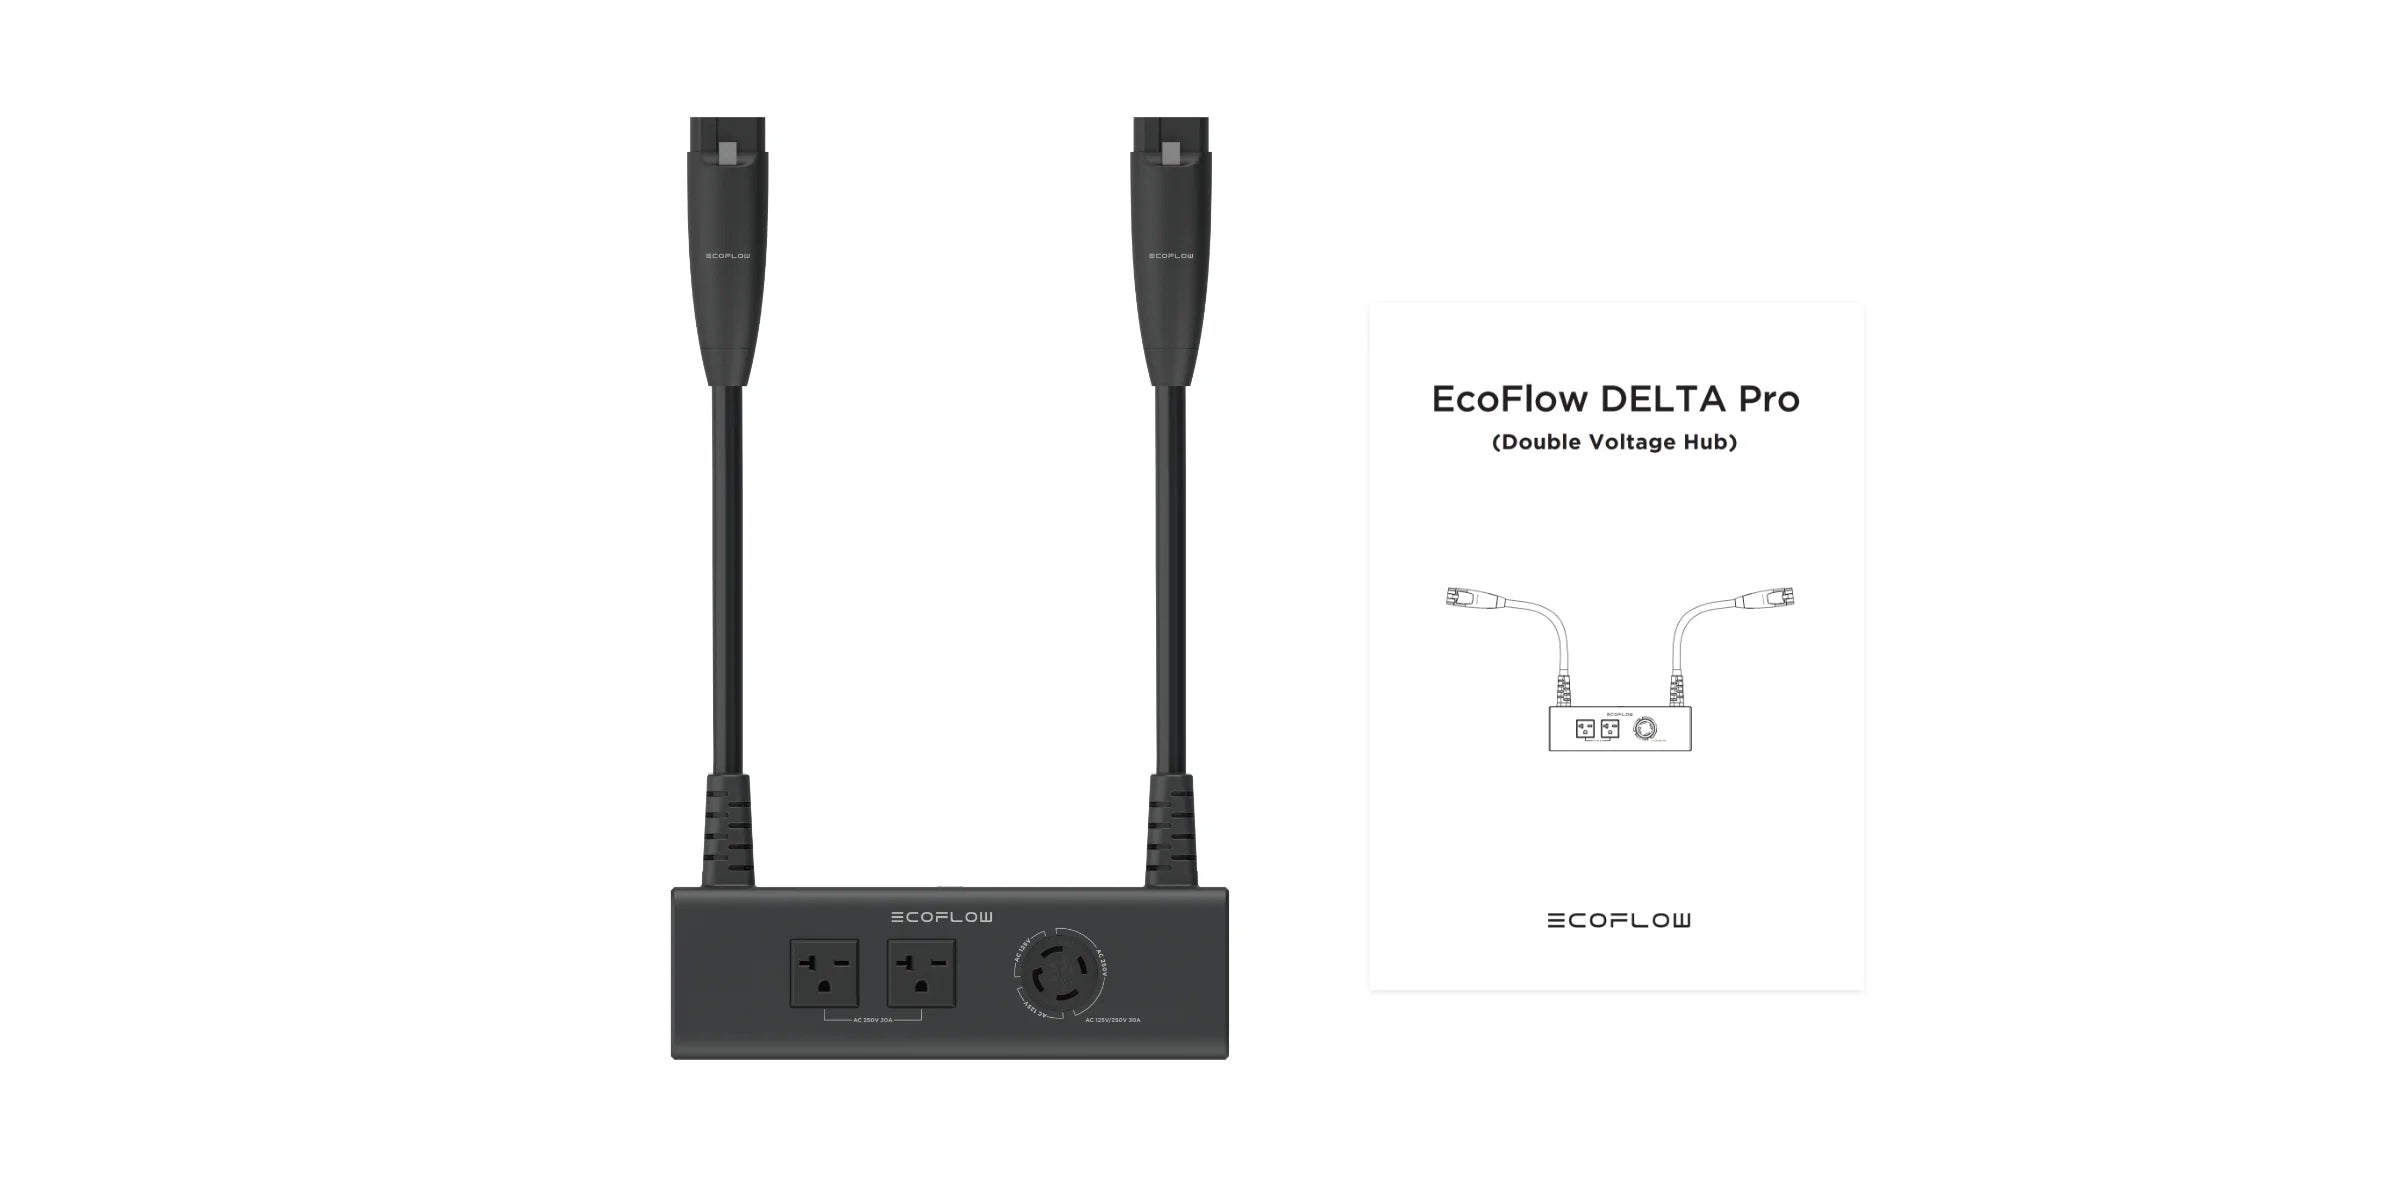 EcoFlow Double Voltage Hub (DELTA Pro) package contents